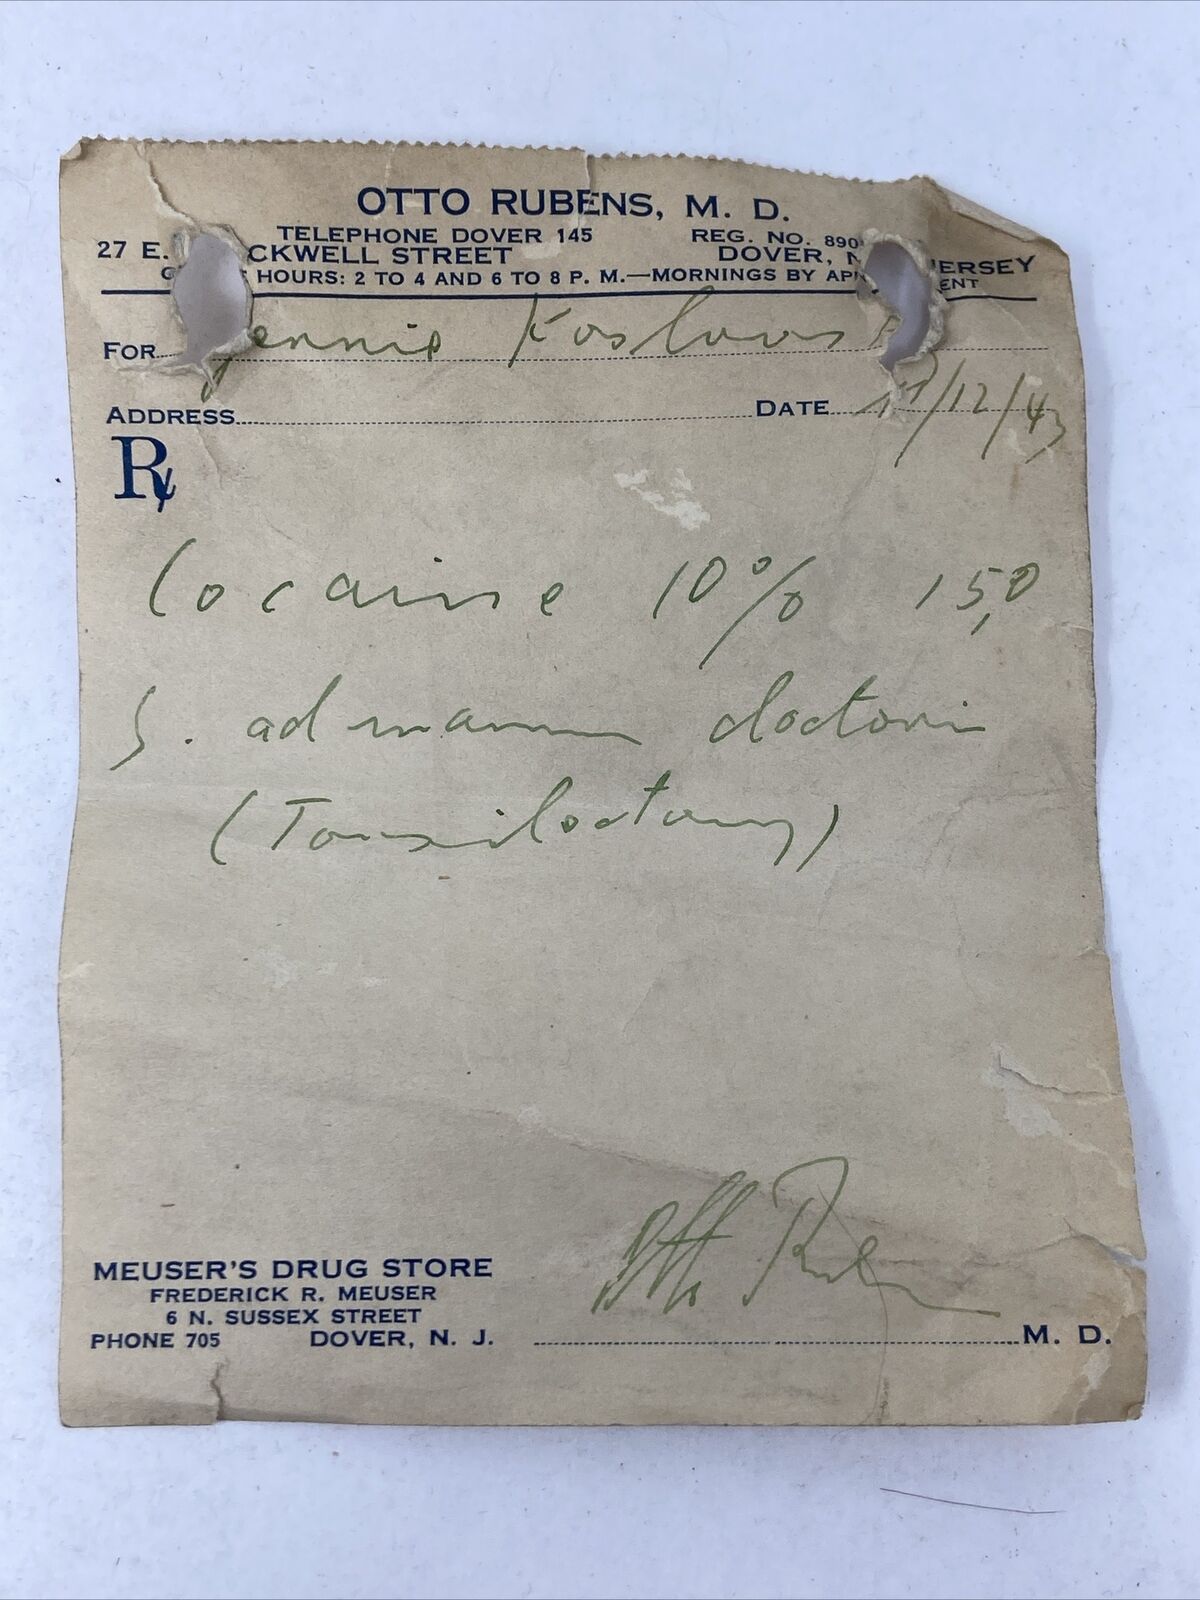 1943 Vintage Doctors Prescription Cocaine 10% Otto Rubens MD Dover New Jersey